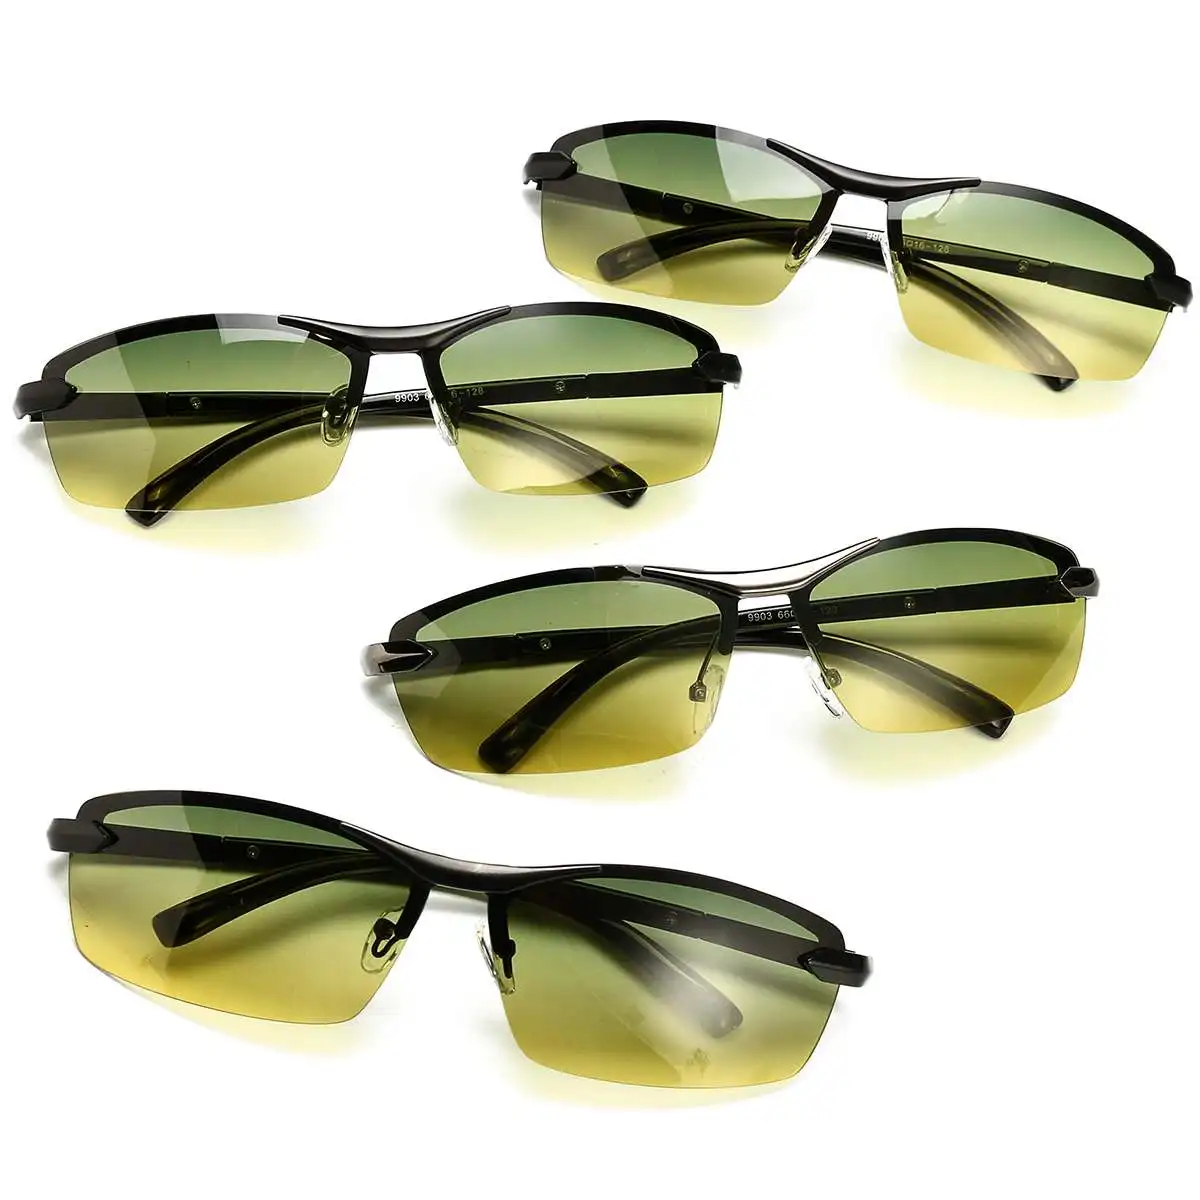 Дневное ночное видение, очки для водителей, поляризованные солнцезащитные очки, антибликовые очки для вождения автомобиля, защитные очки